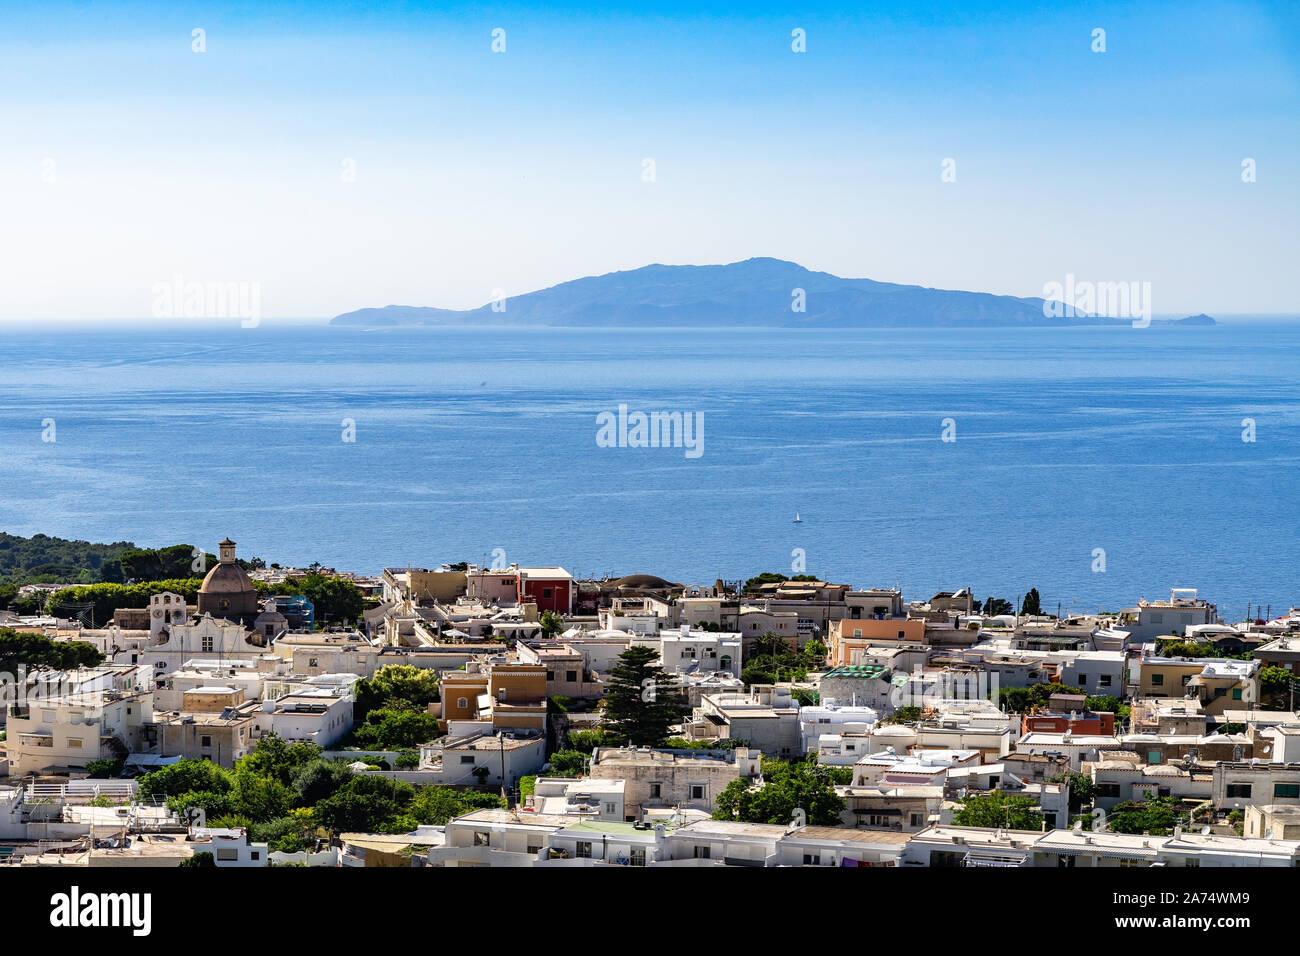 Vista panoramica della città di Anacapri, Ischia e le altre isole flegrei dalla seggiovia rinding fino al Monte Solaro, Capri, Campania, Italia Foto Stock